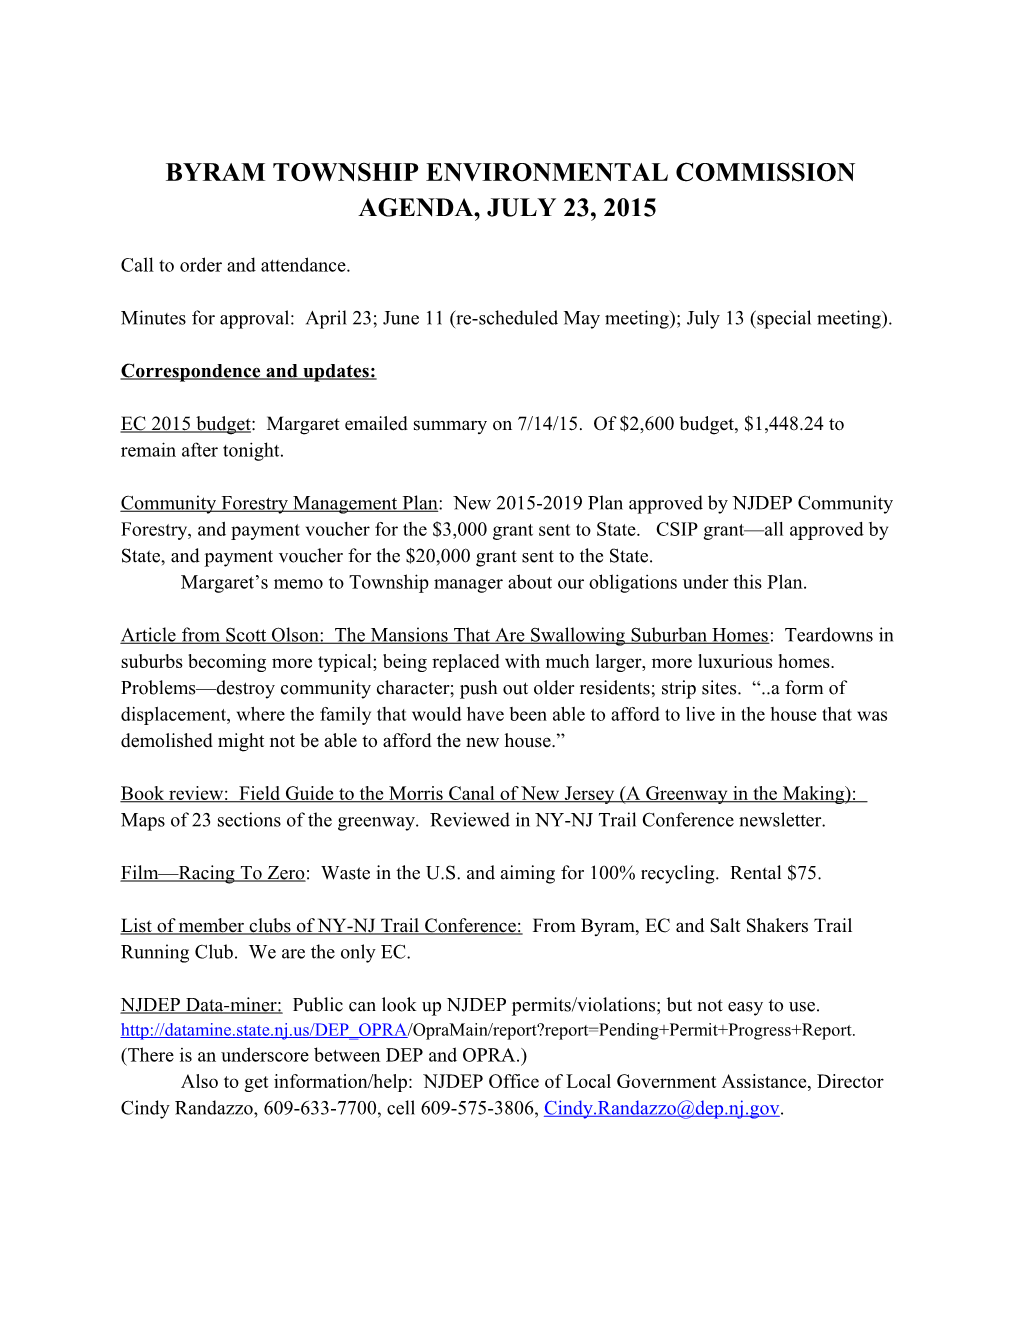 Byram Township Environmental Commission